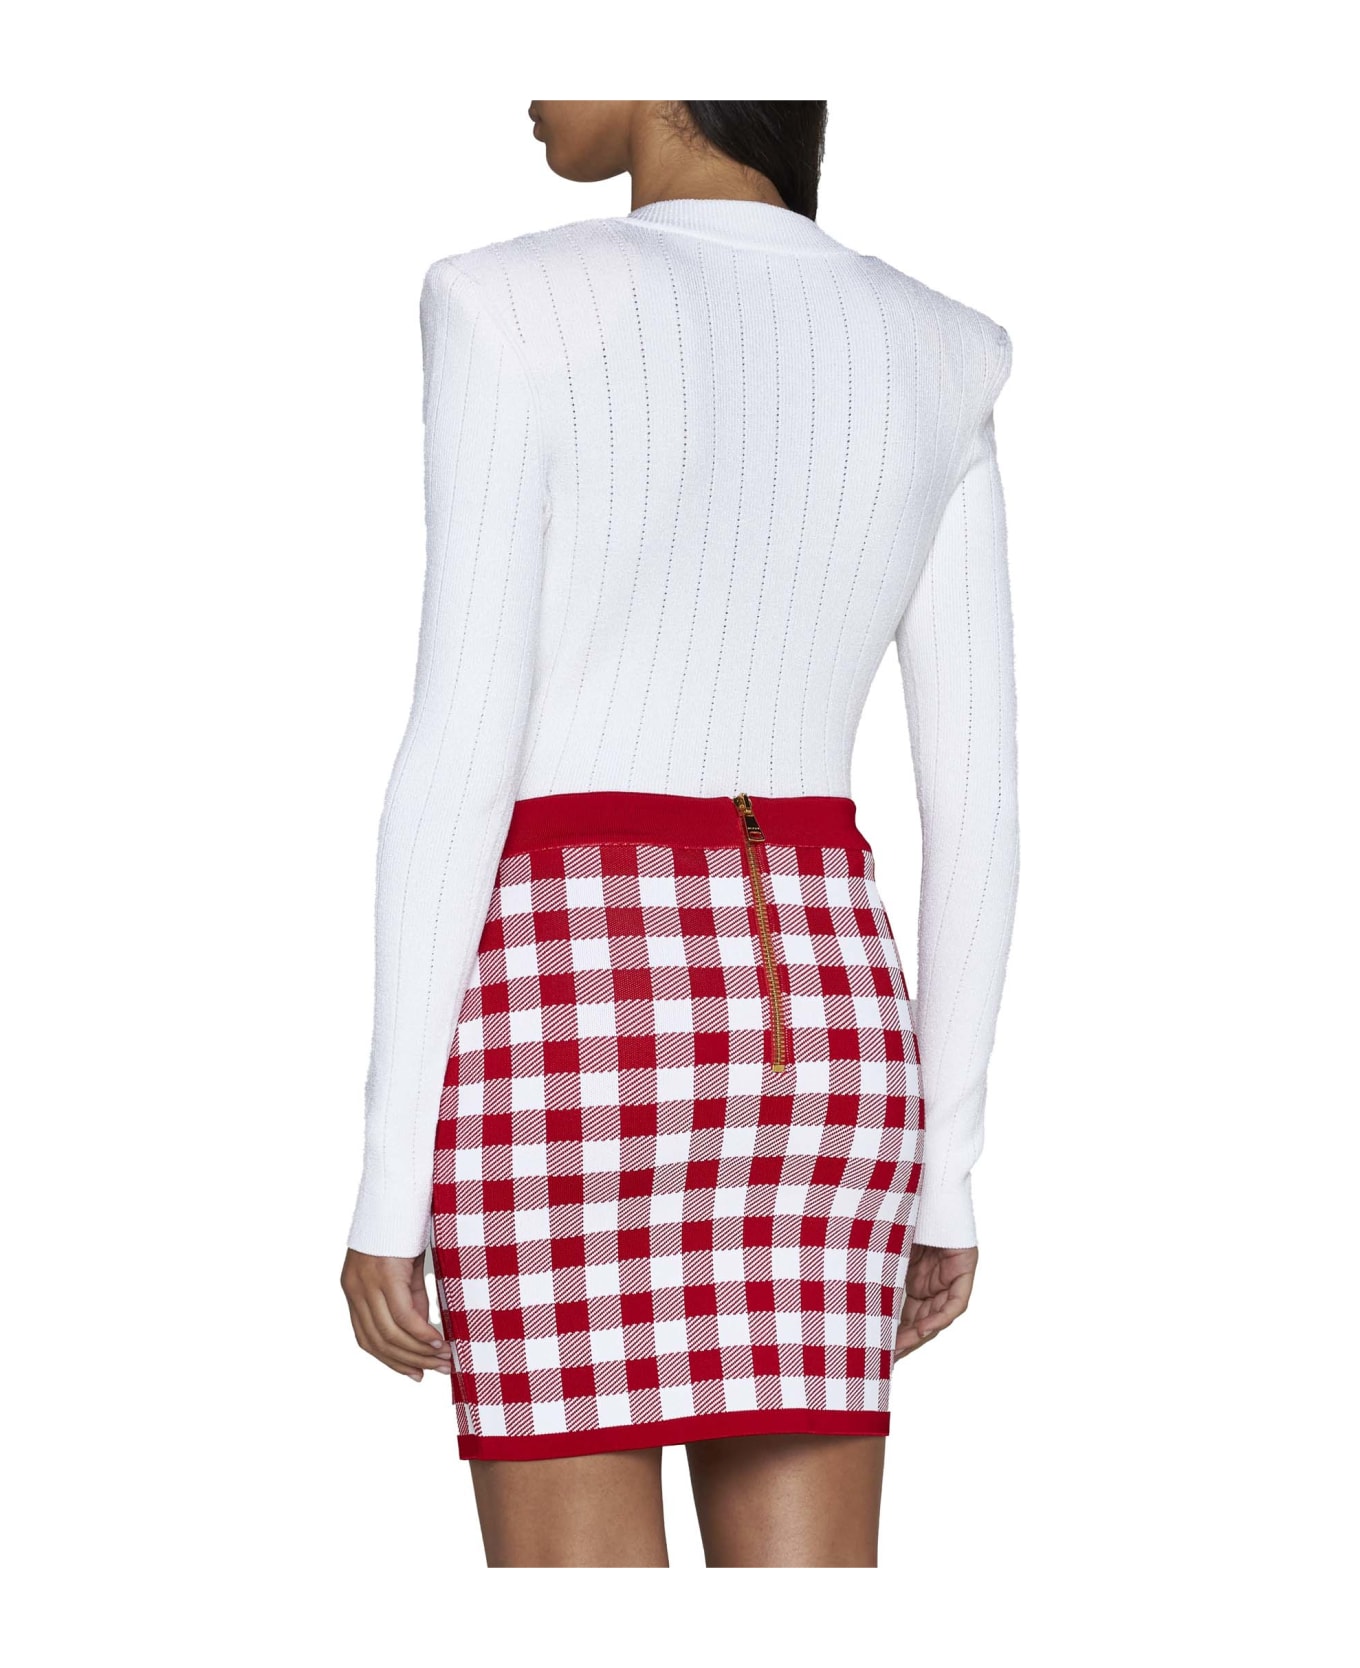 Balmain Viscose-blend Knit Miniskirt - Rouge/blanc スカート